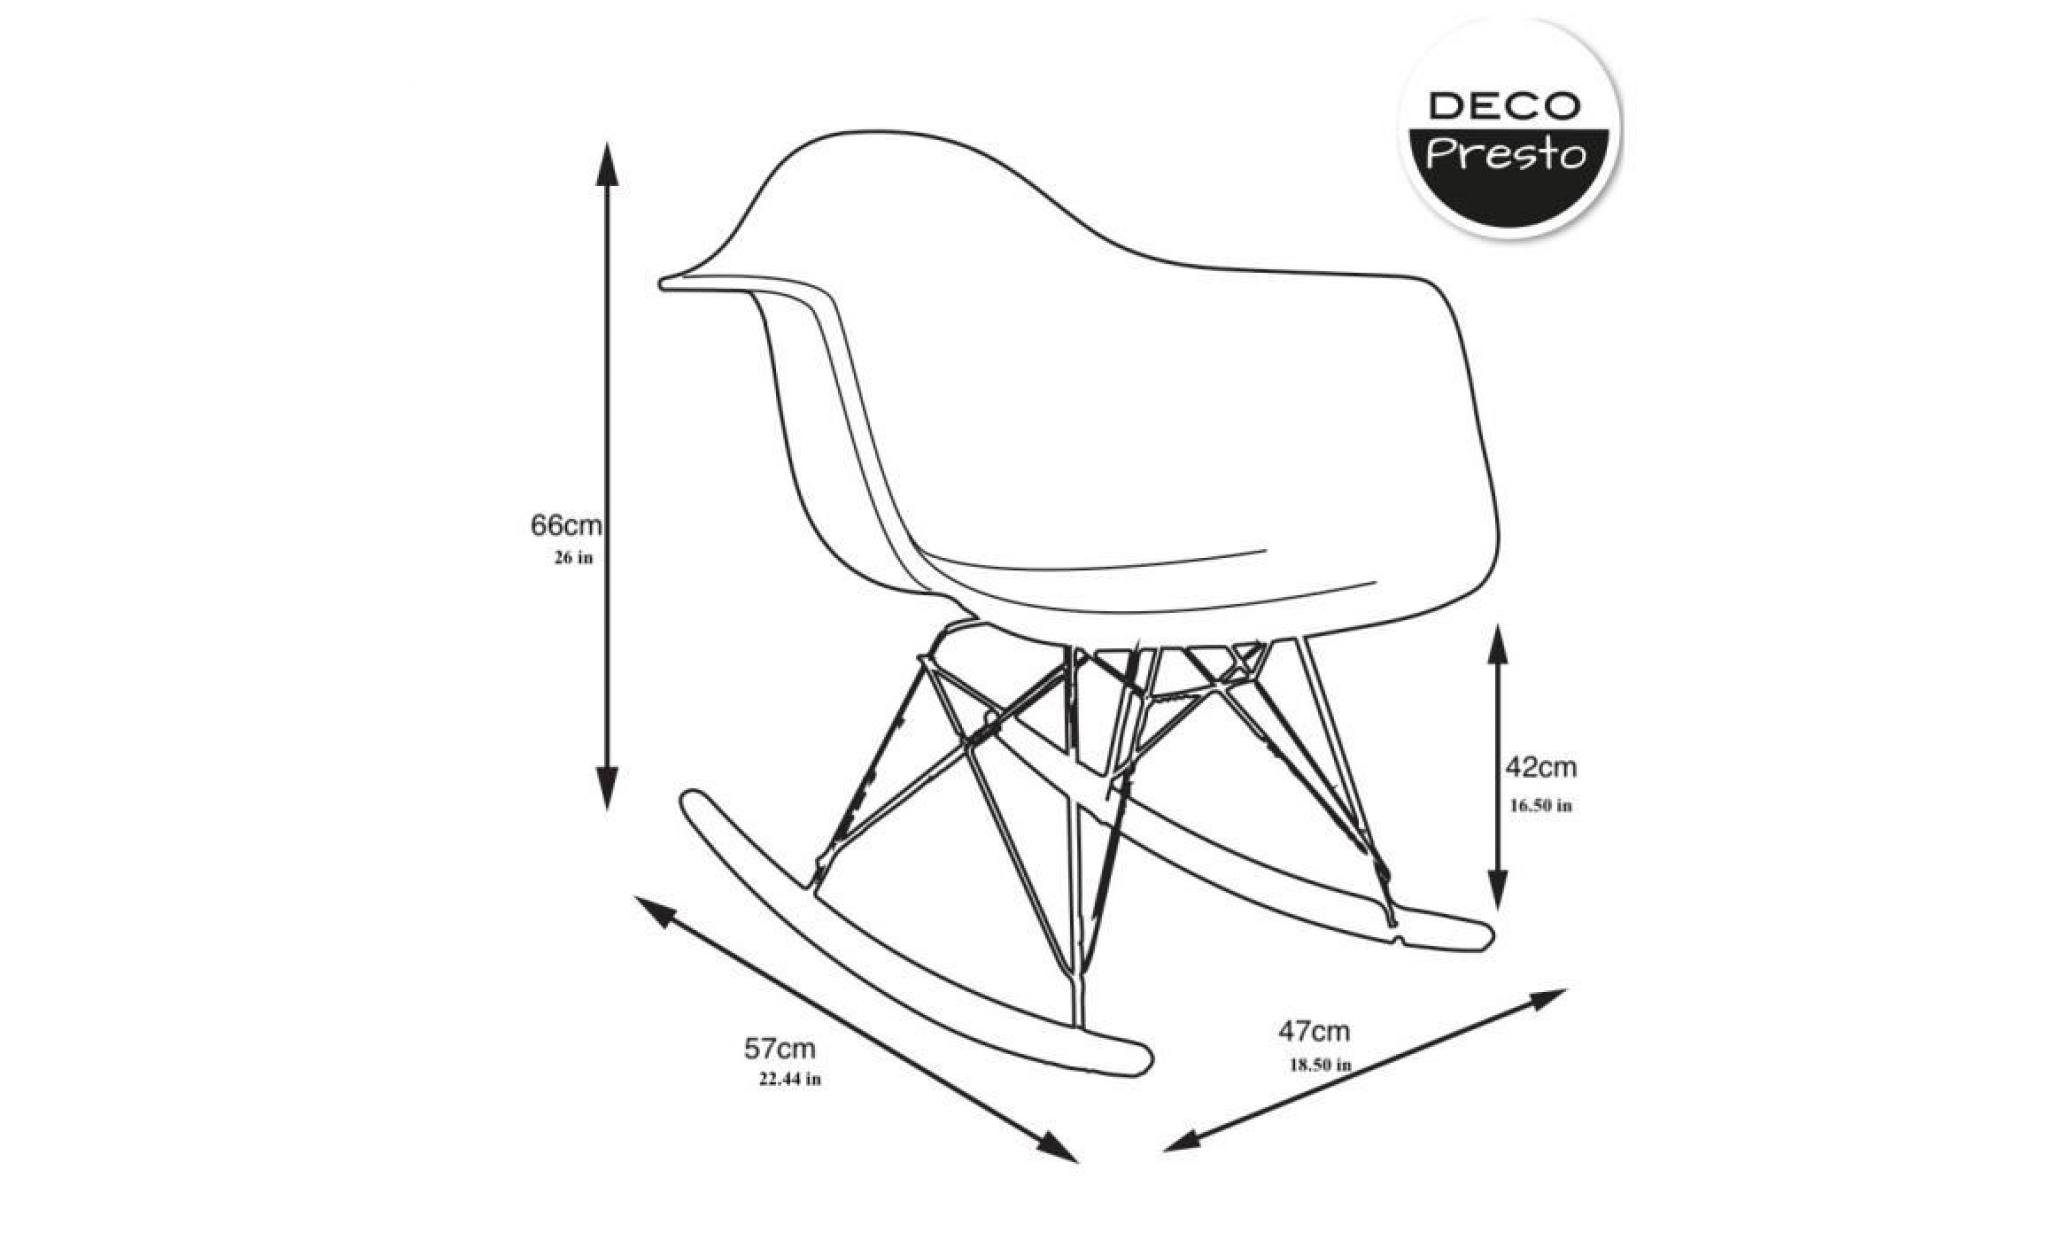 1 x fauteuil à bascule rocking chair eiffel  patchwork couleur pieds: bois naturel decopresto dp rarl pc 1 pas cher